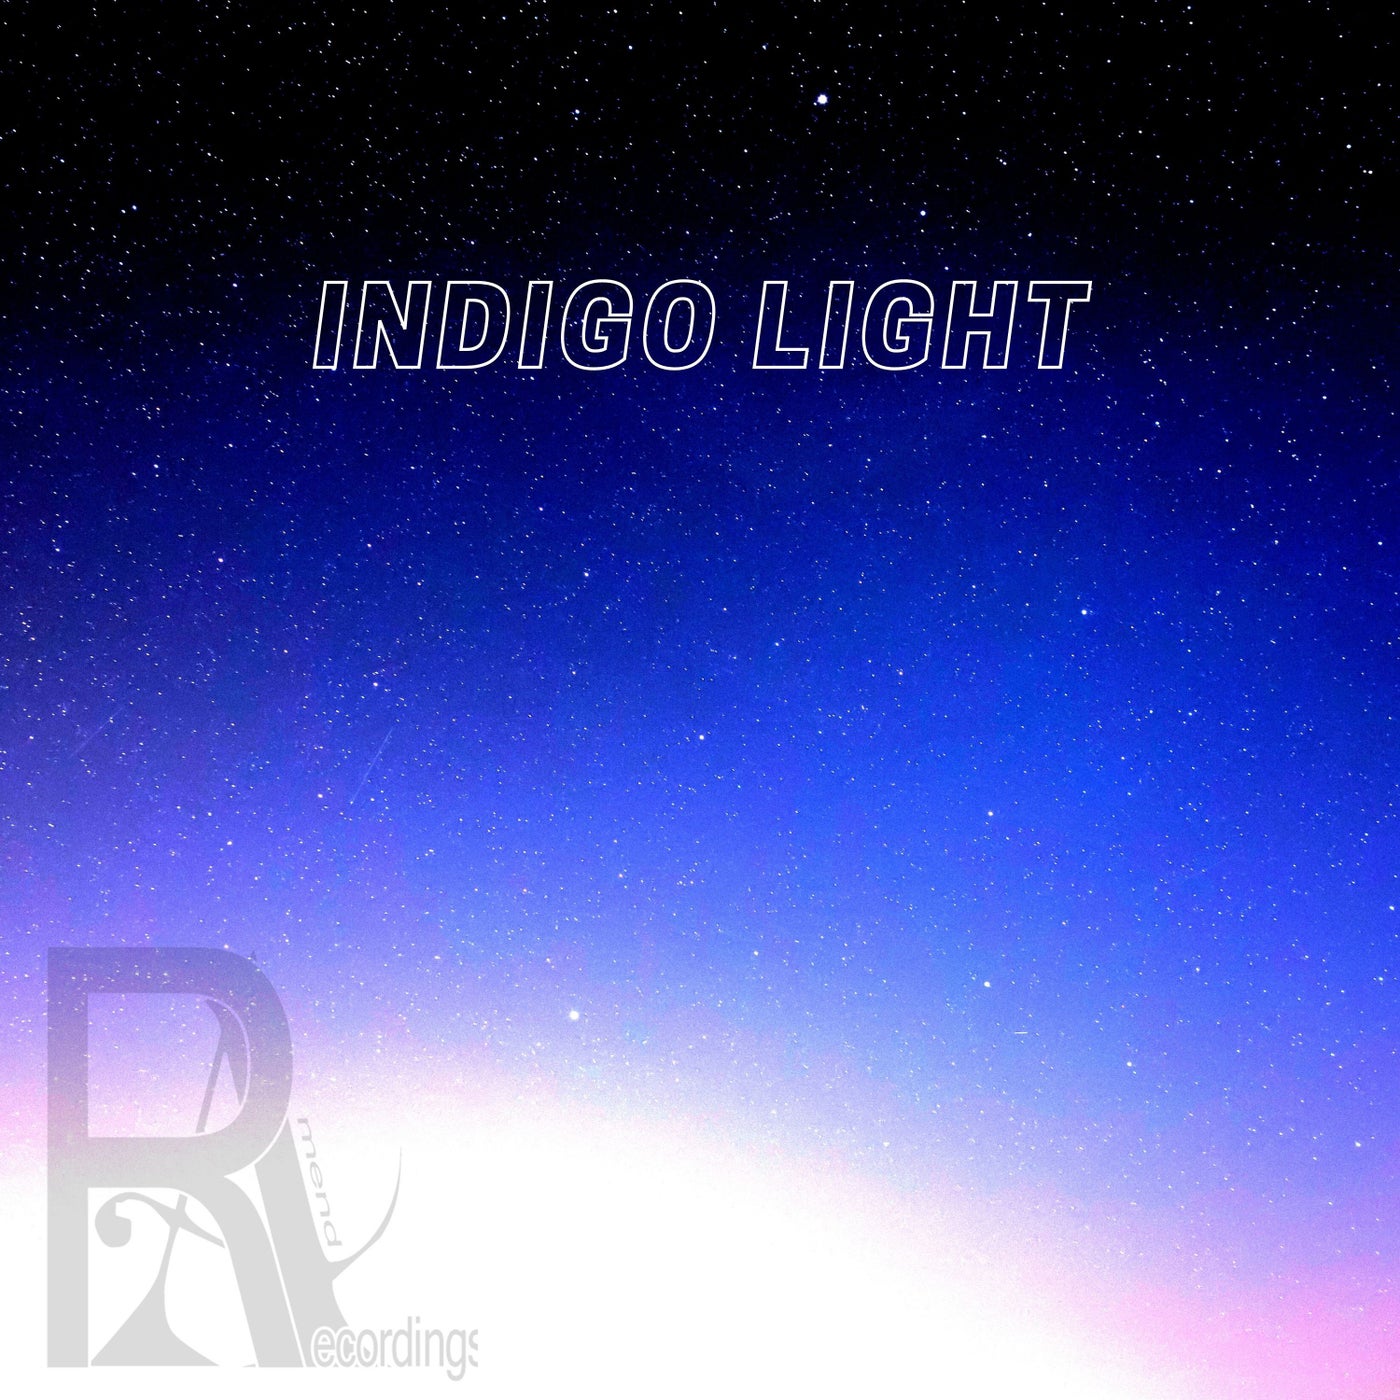 Indigo Light